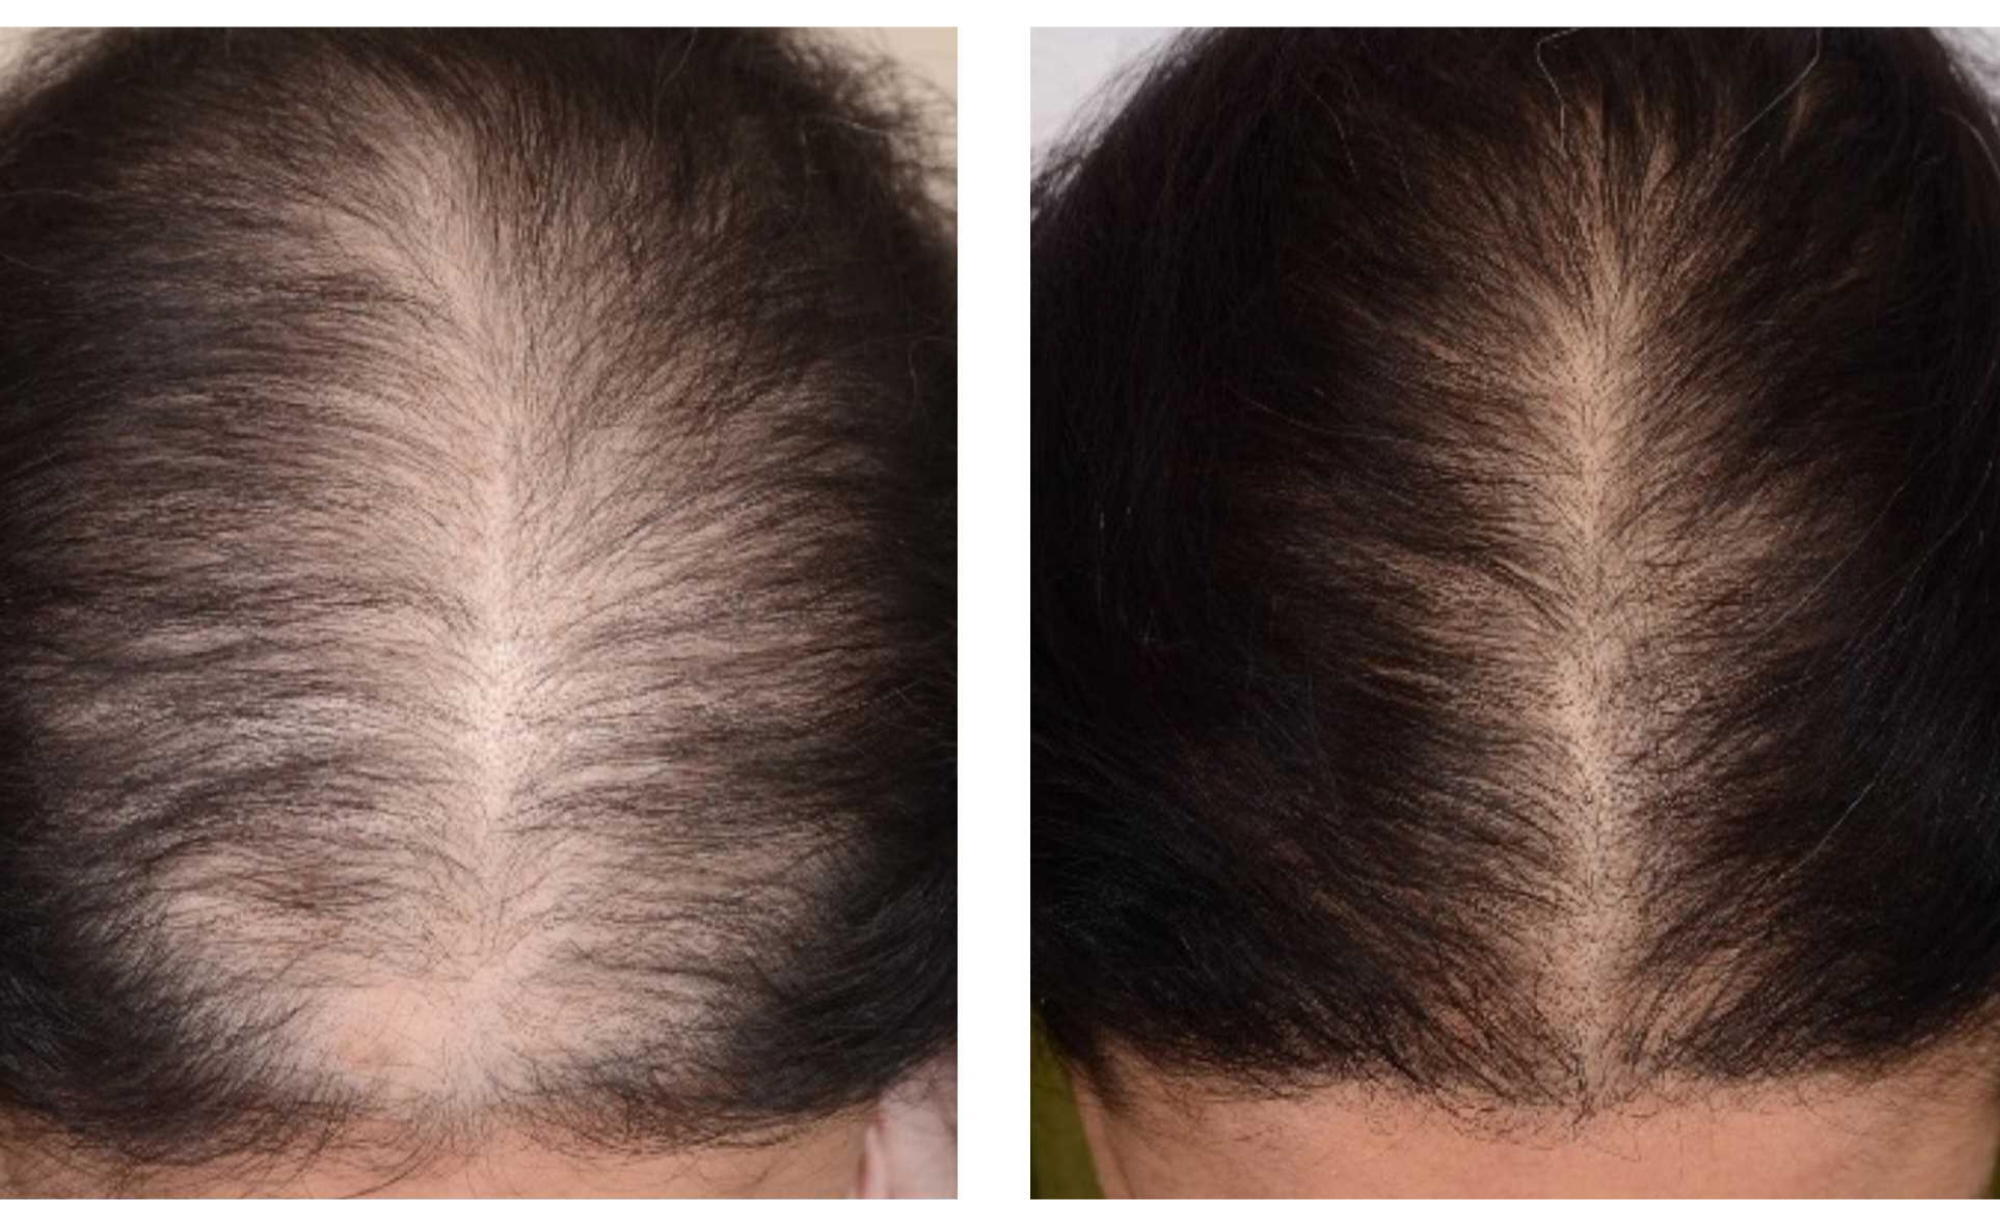 Traitement PRP pour les cheveux : stimulez la croissance capillaire et améliorez la densité des cheveux grâce à cette procédure non chirurgicale. Résultats avant après chez une femme